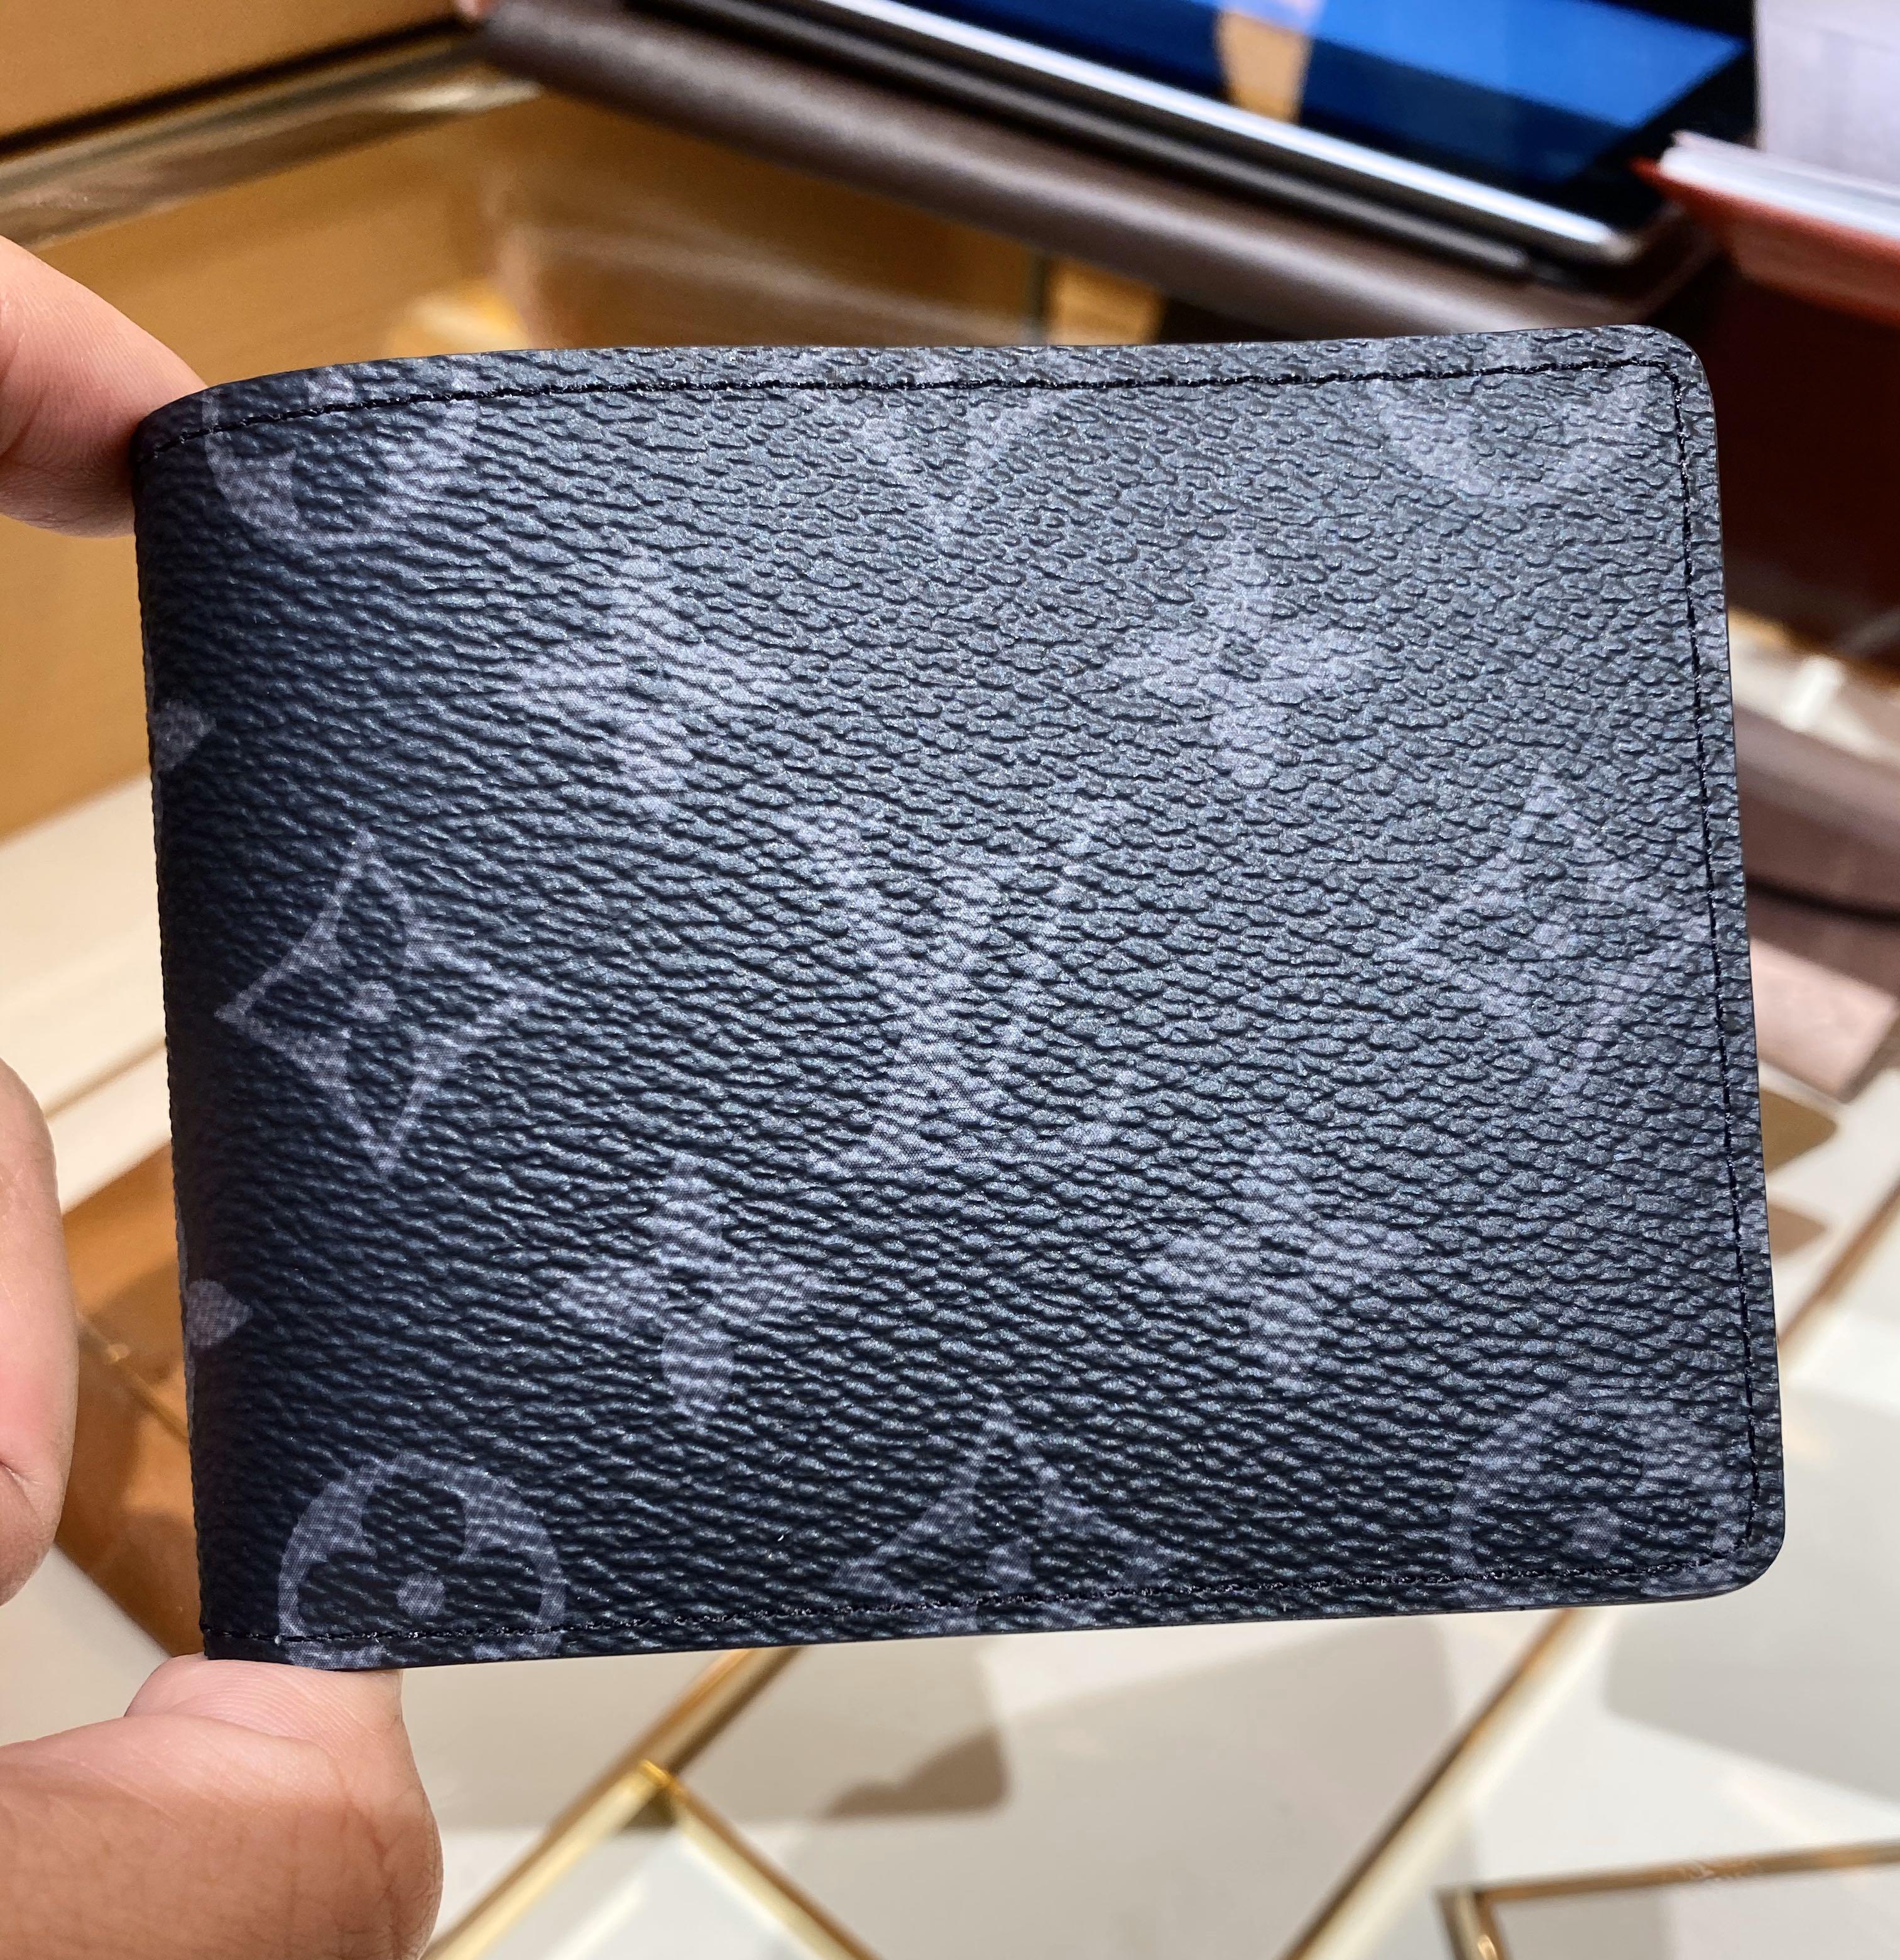 Shop Louis Vuitton SLENDER Slender wallet (M62294) by design◇base